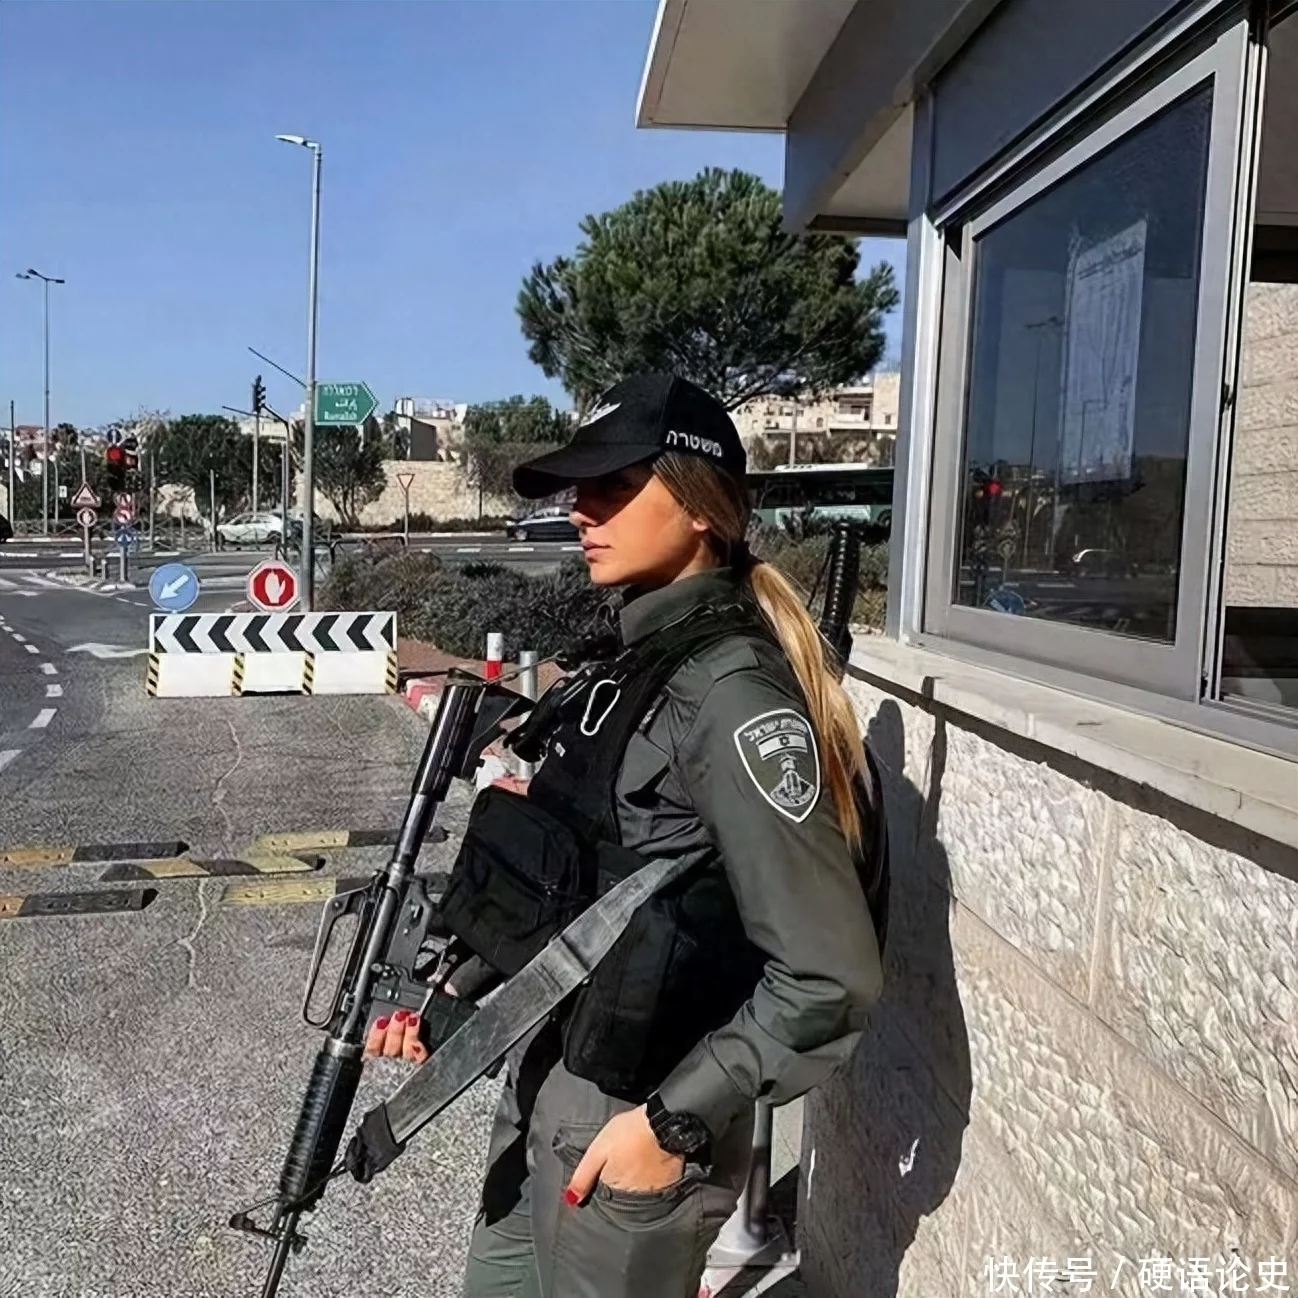 Israelische Soldatinnen : Von israelischen soldaten, die in einsätzen ...